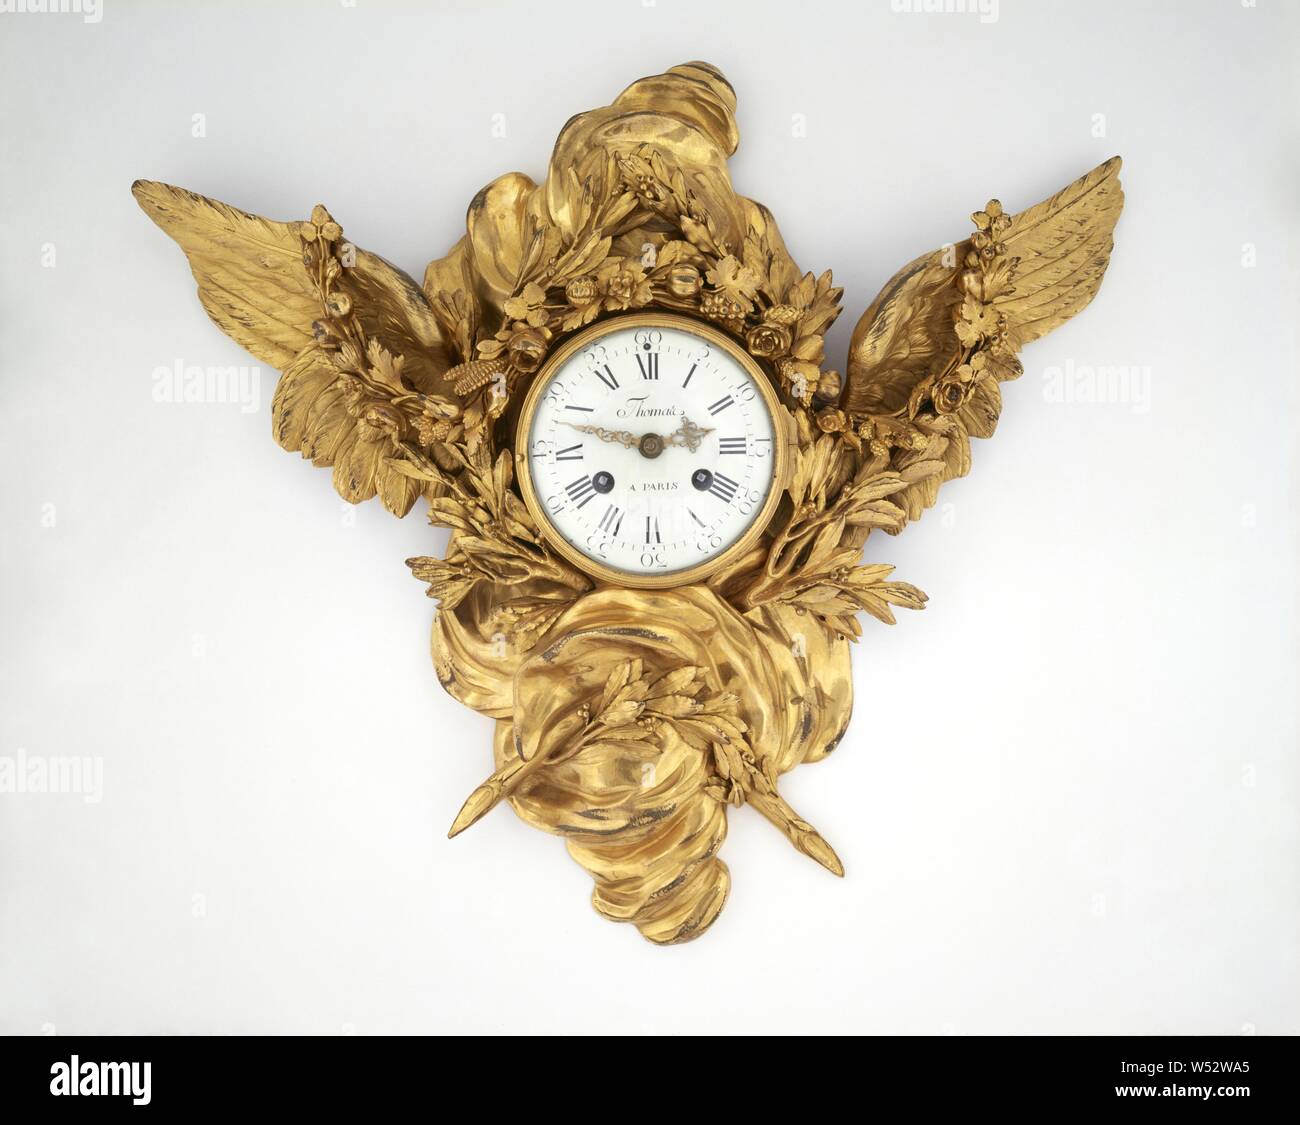 Horloge murale, Inconnu, mouvement d'horloge probablement par Nicolas  Thomas (français, est mort après 1806 (master) 1778), Paris, France,  environ 1785, bronze doré, verre, métal émaillé, 49,5 × 55,9 cm (19 1/2 x  22 dans Photo Stock - Alamy